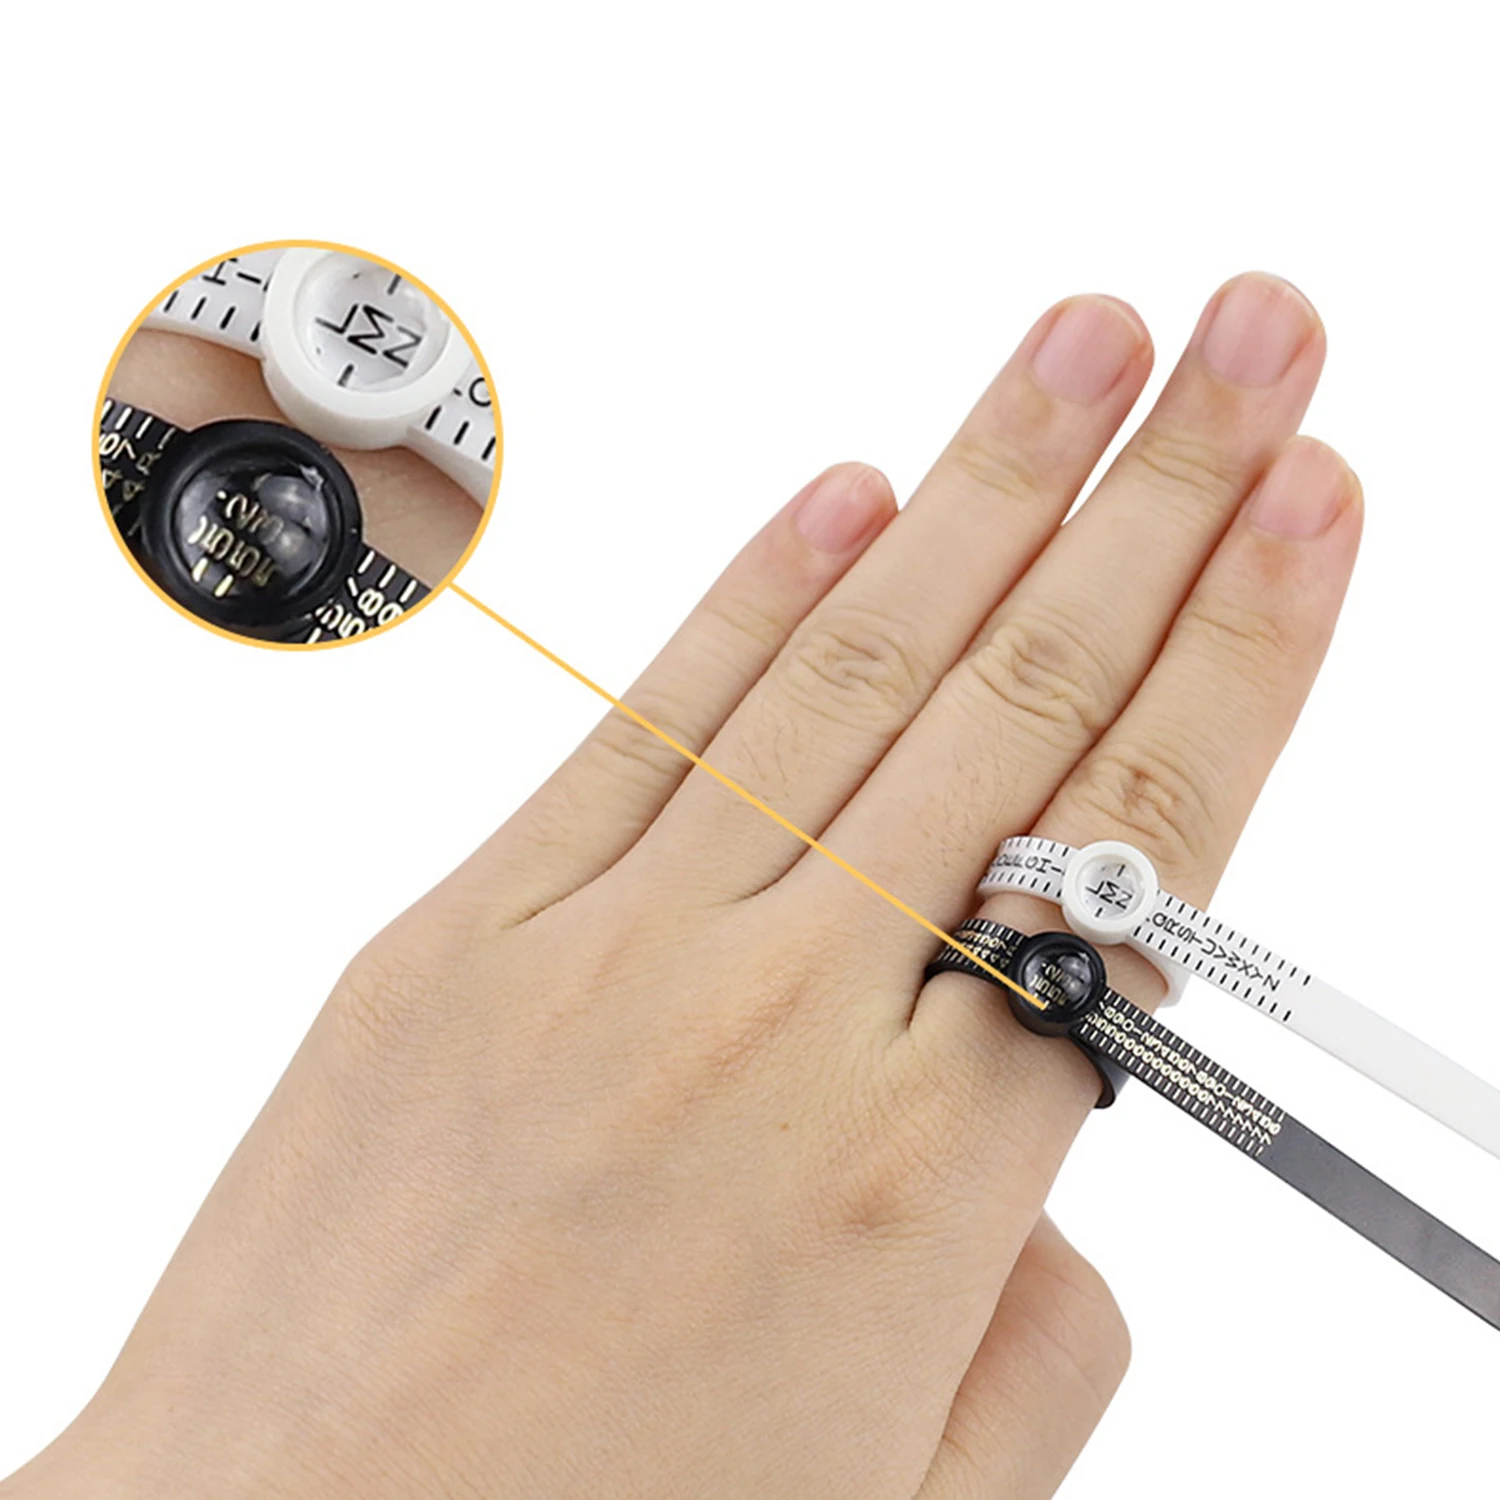 

Измерительная линейка кольцо для окружности пальца с увеличительным стеклом стандартное измерение стандарта Великобритании и США измерительный инструмент для размера кольца пальца